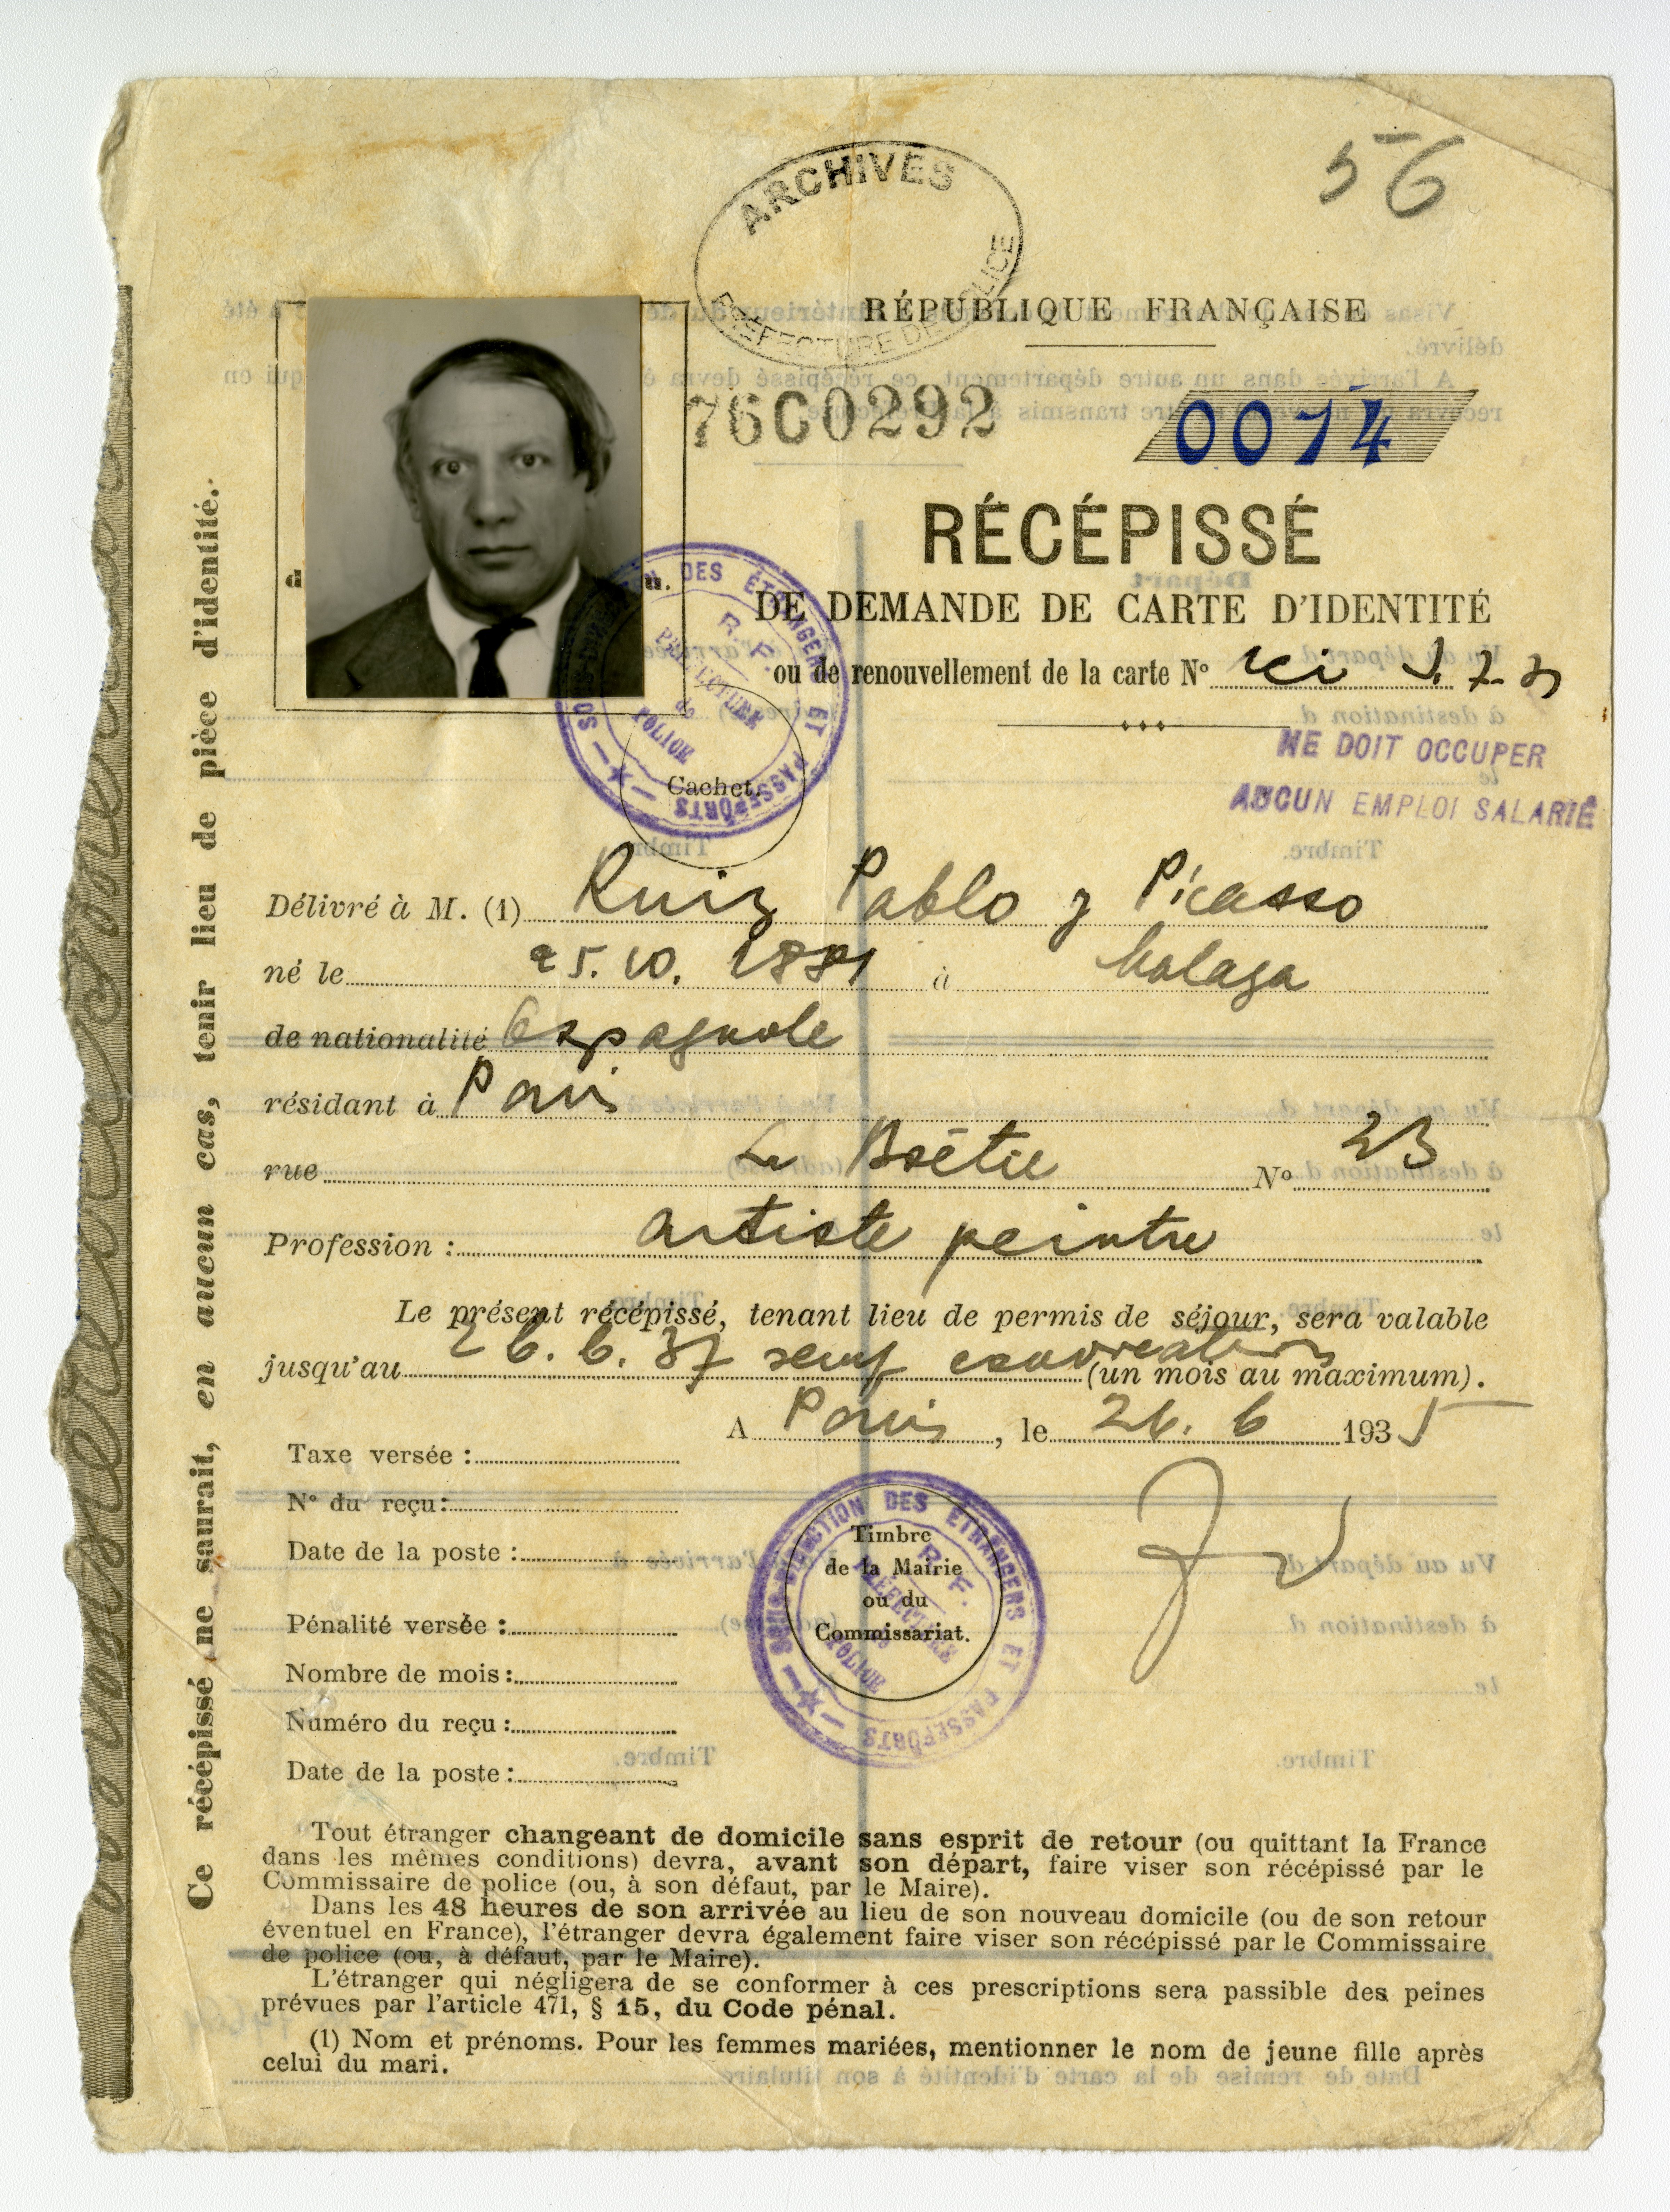 "Official receipt from Picasso’s request for a foreigner’s identity card, 1935 (Courtesy of the Archives de la Préfecture de Police de Paris)